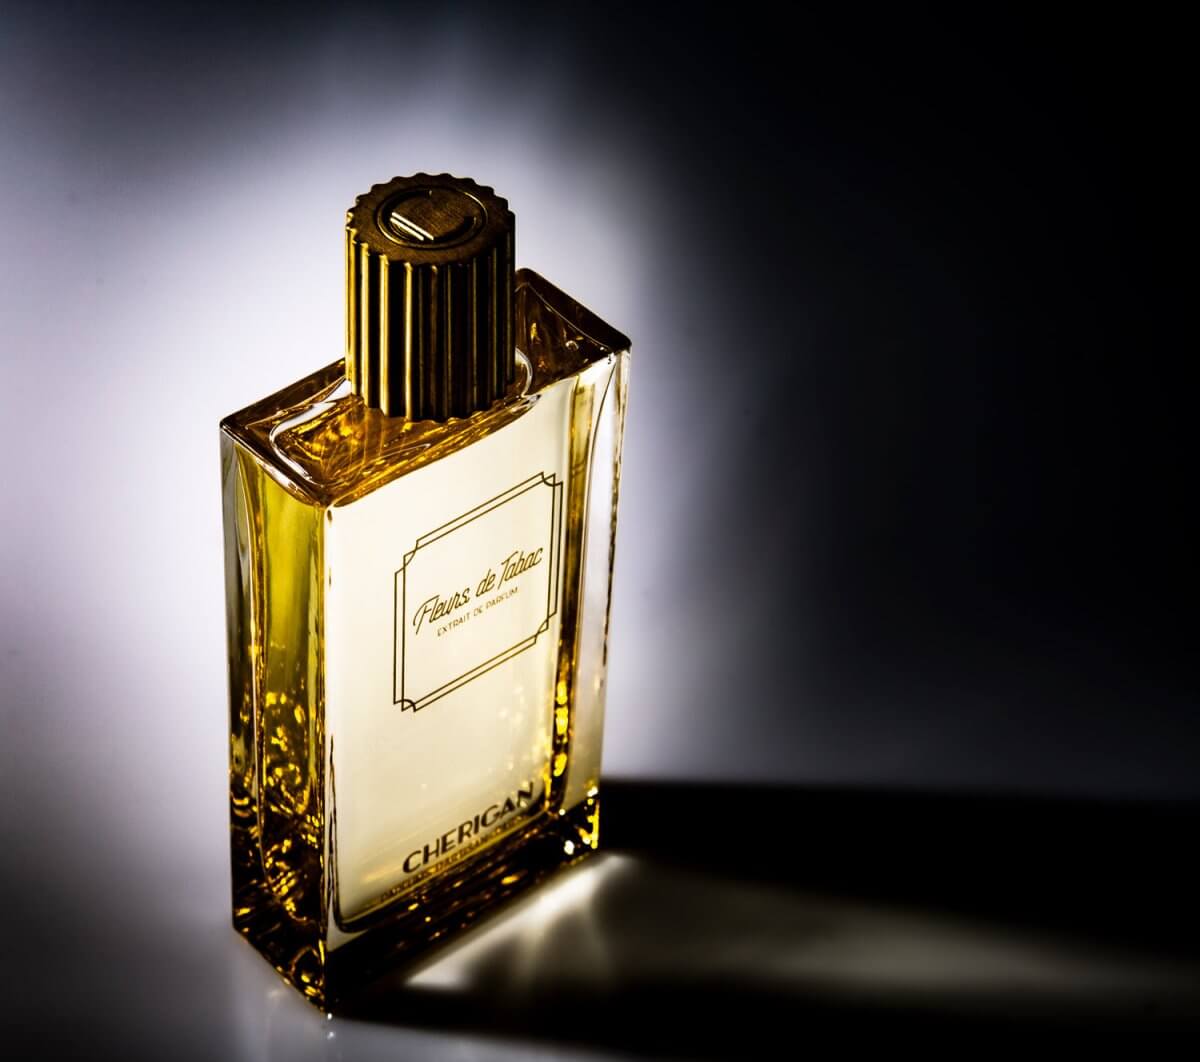 Fleurs de Tabac Perfume by cherigan,Size 15ml, - La Maison Du Parfum